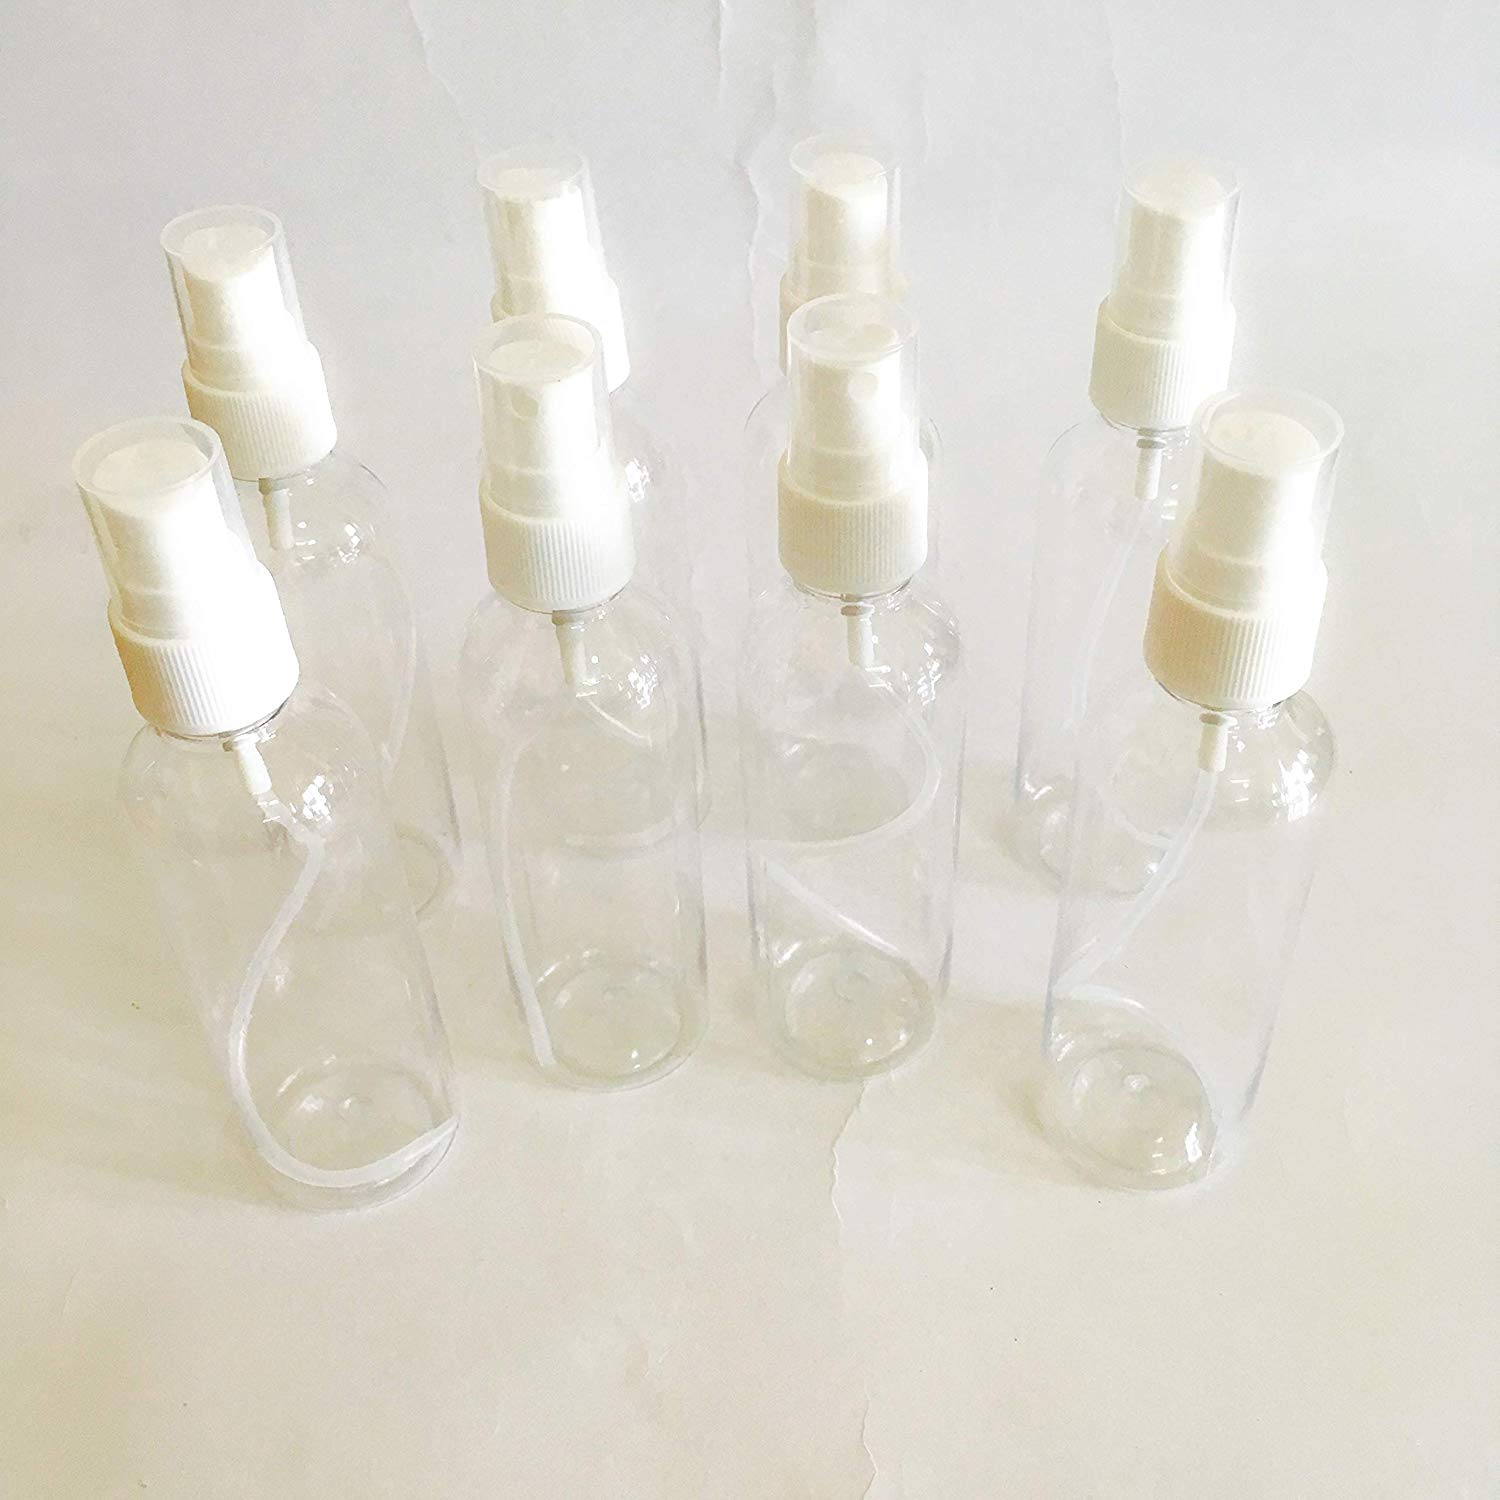 Forever Bottles - Refillable Spray Bottles & More - Thankyou